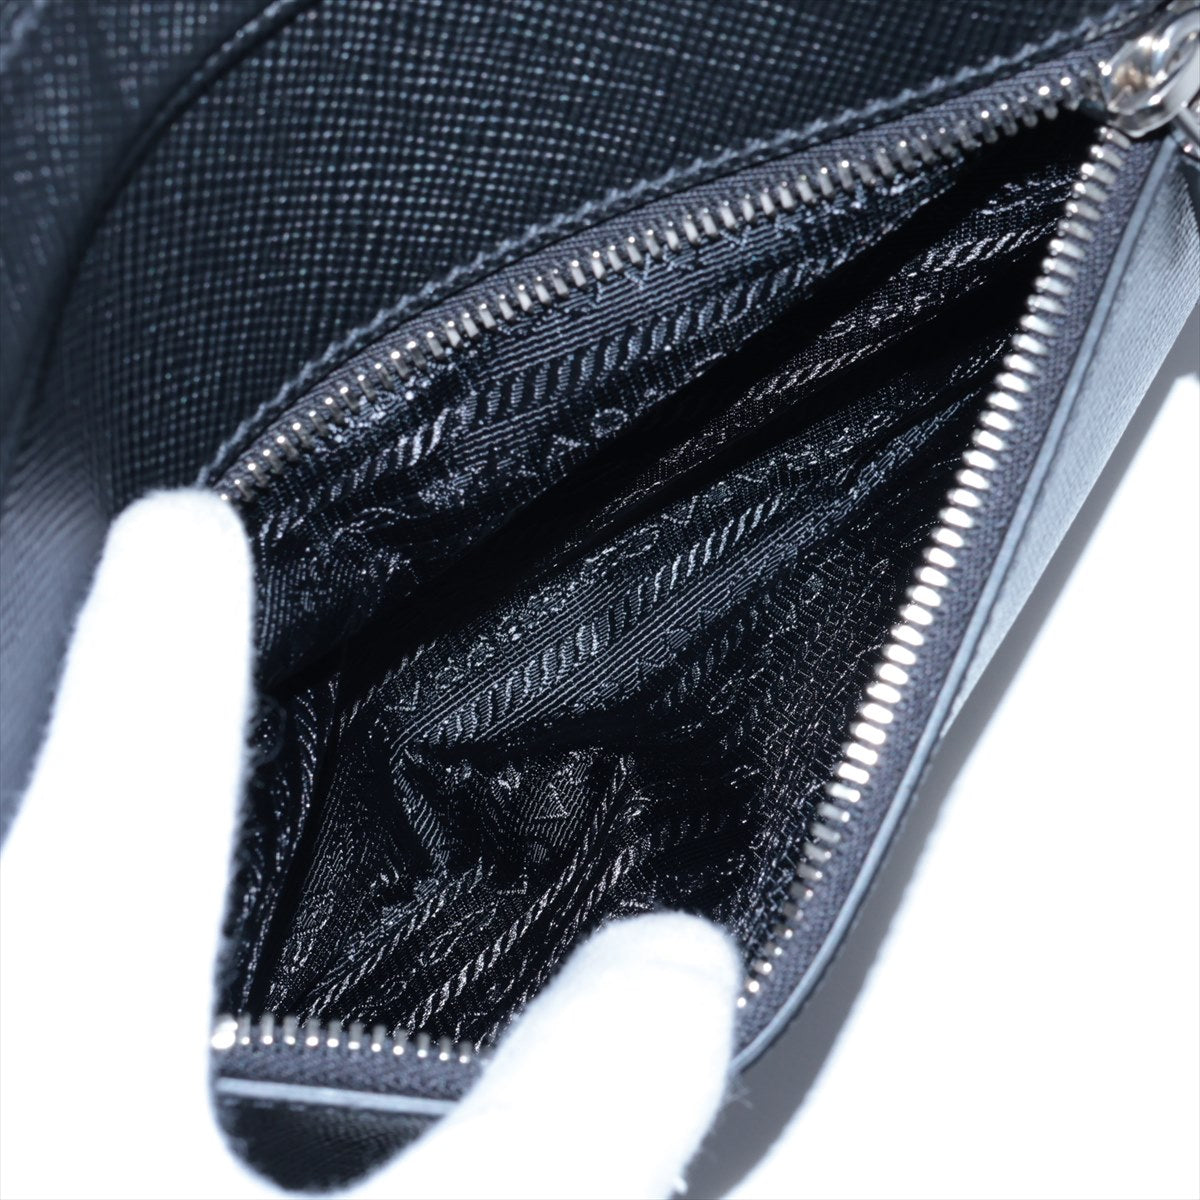 Prada Saffiano Shoulder Bag Black